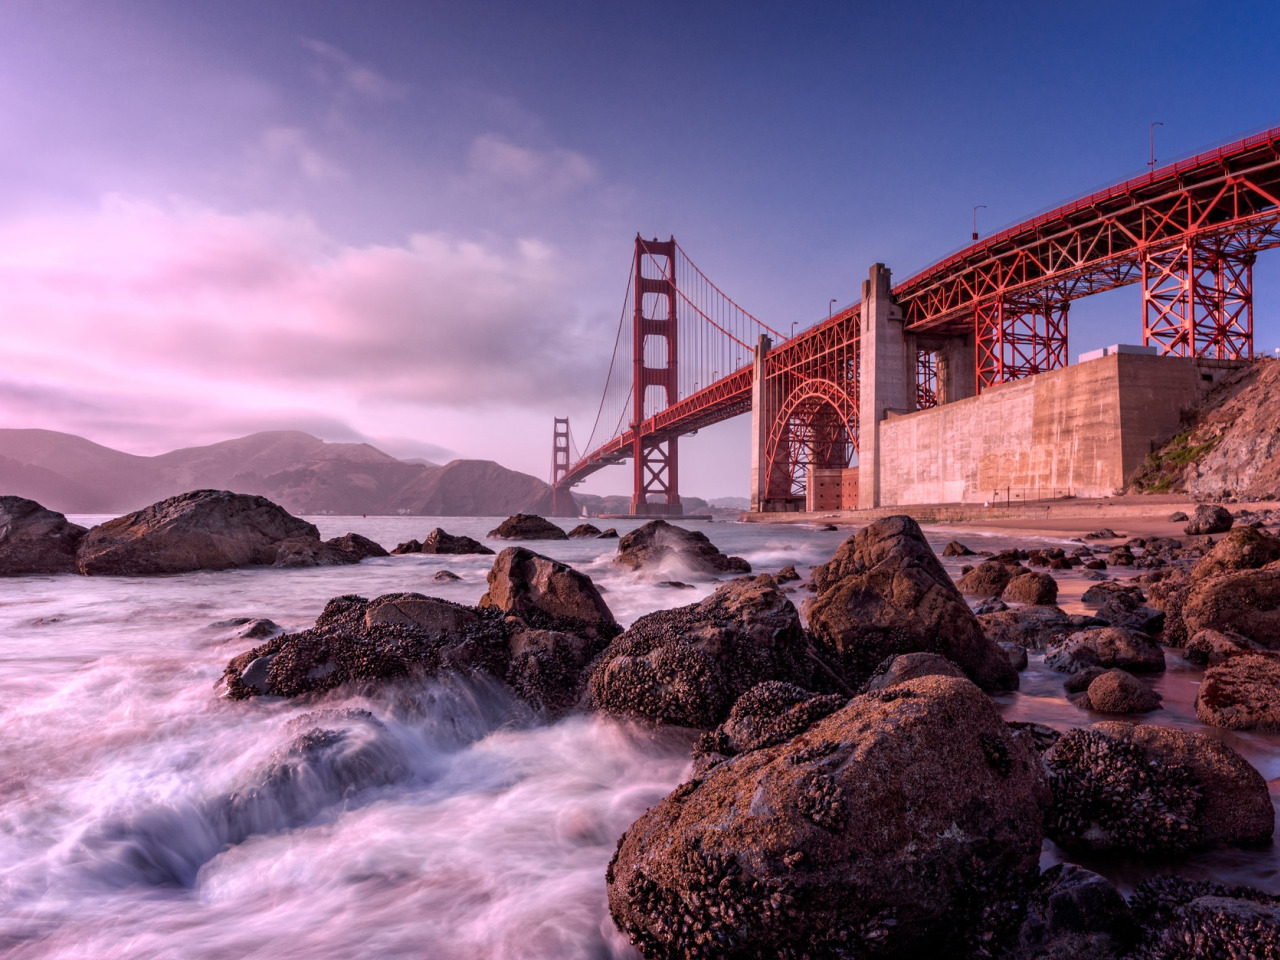 Сан франциско какой океан. Сан Франциско. Мост с камнями. Волны под мостом. Заставка Калифорния.